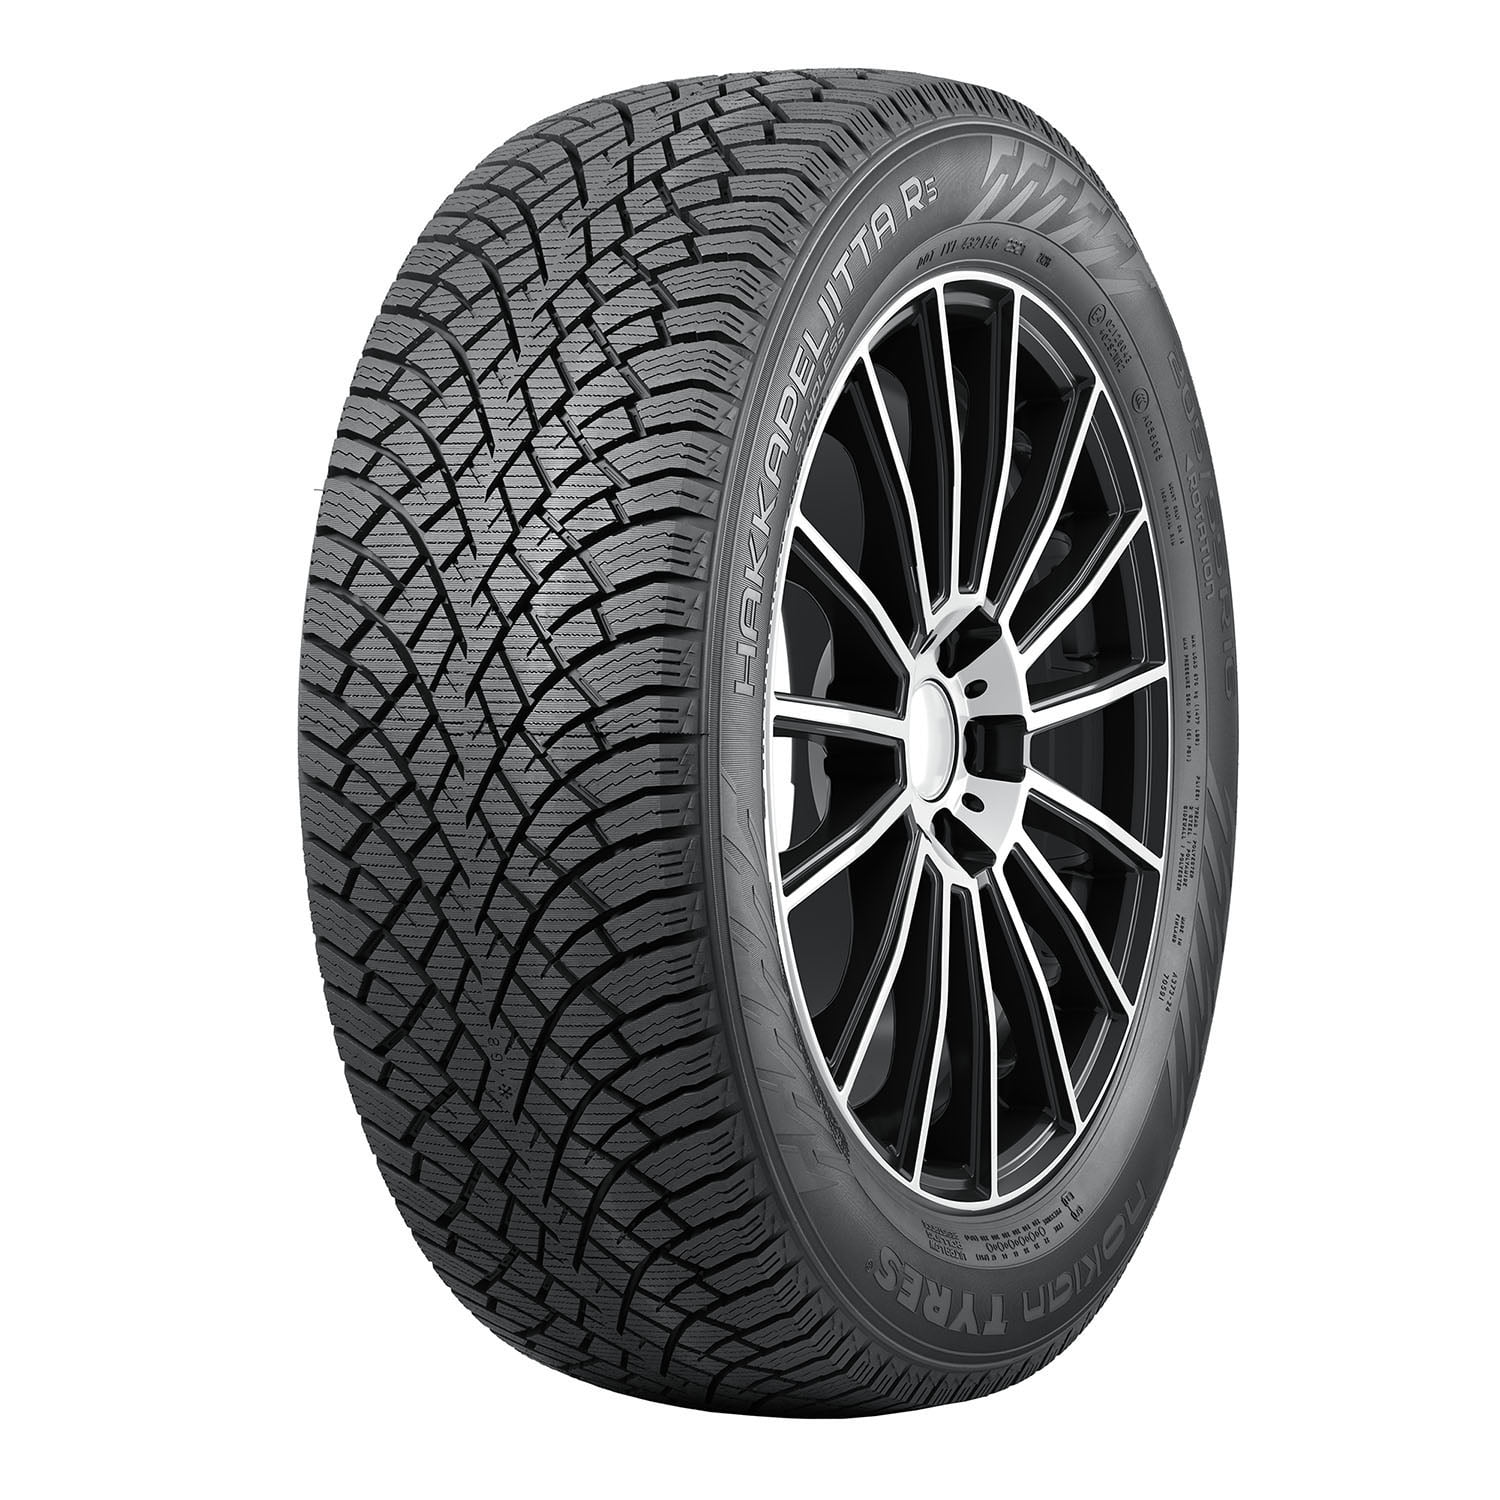 Nokian Hakkapeliitta Fits: 96T Chrysler Winter Tire R5 2023 235/40R19 Tesla 3 C, XL 200 Long Range 2015-17 Passenger